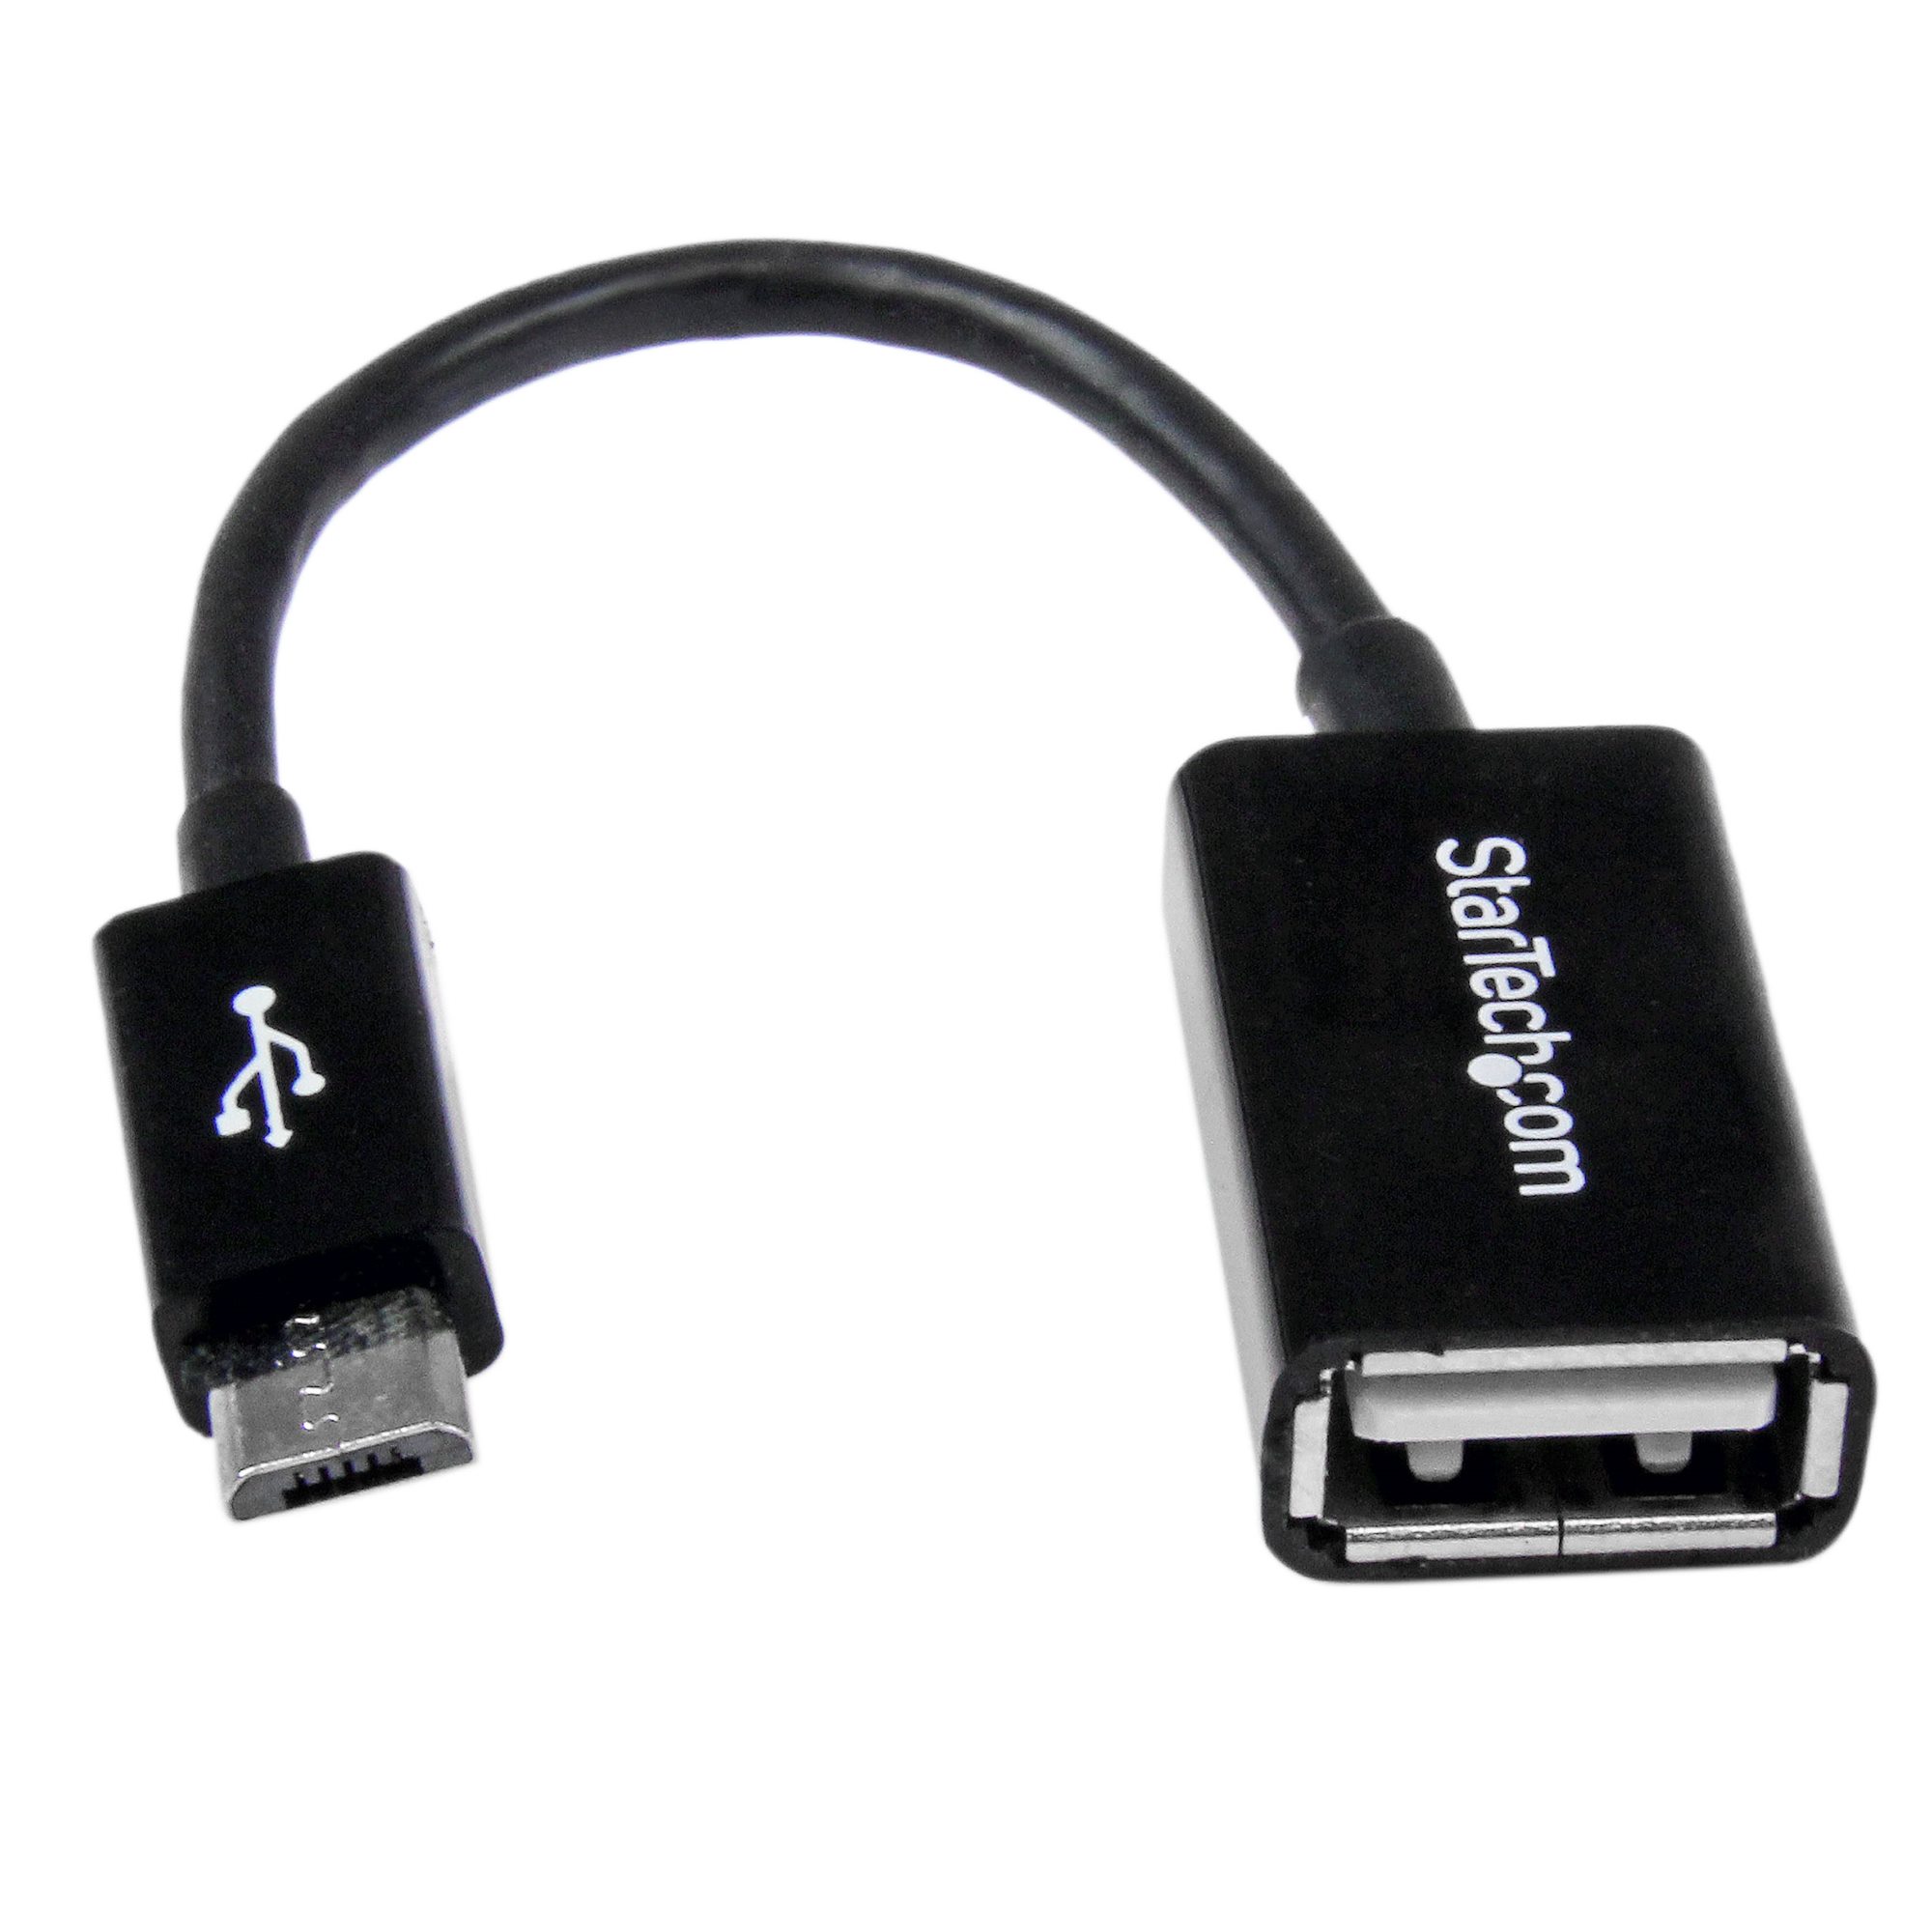 Cable 12cm Micro USB USB A Hembra OTG - Adaptadores USB (USB 2.0) | StarTech.com Europa